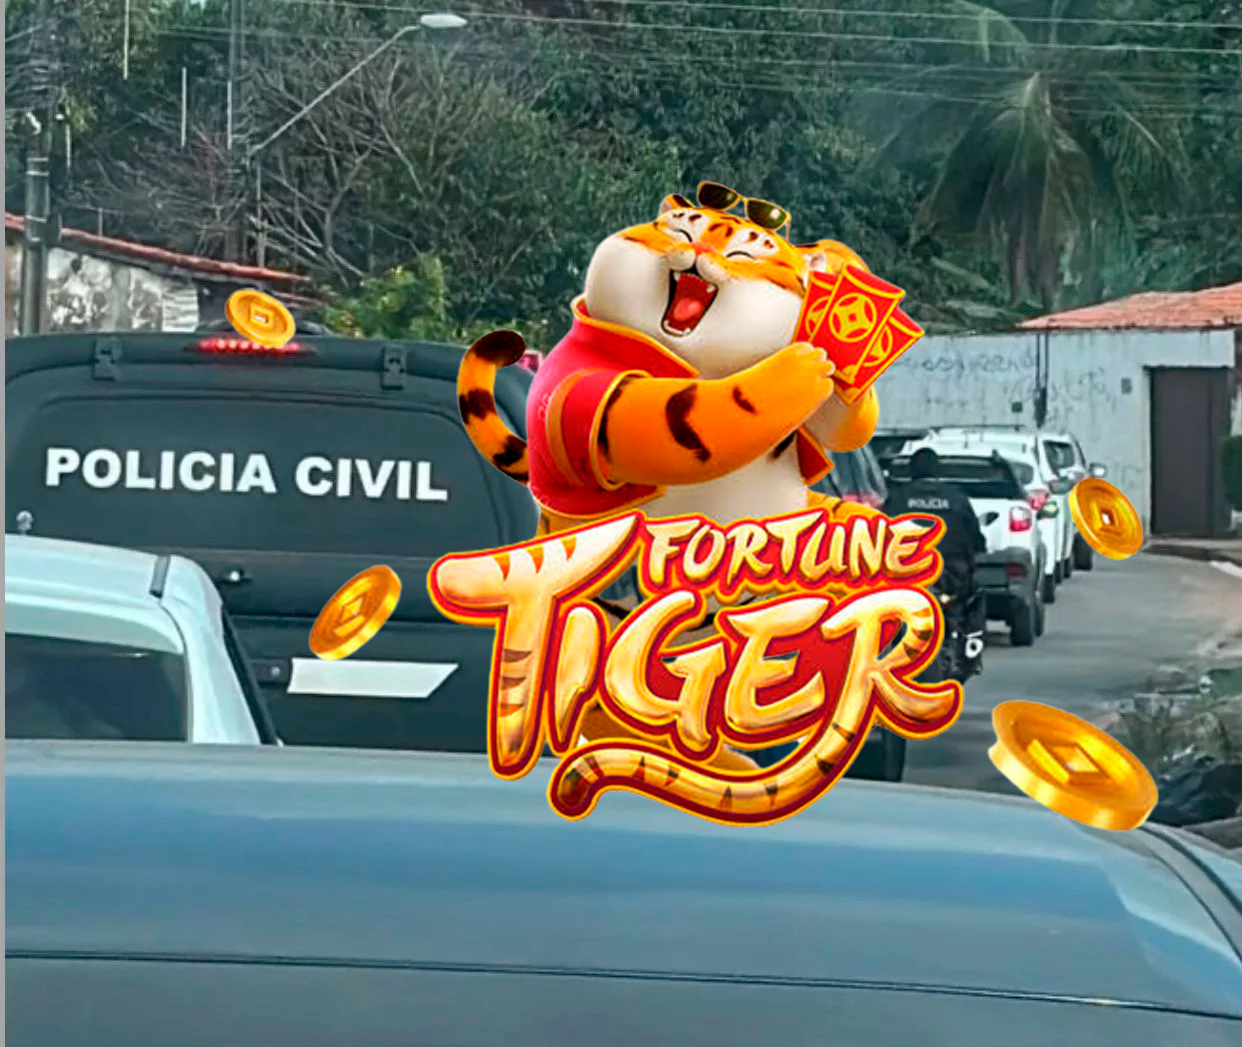 Polícia Civil investiga 'jogo do tigrinho' divulgado por